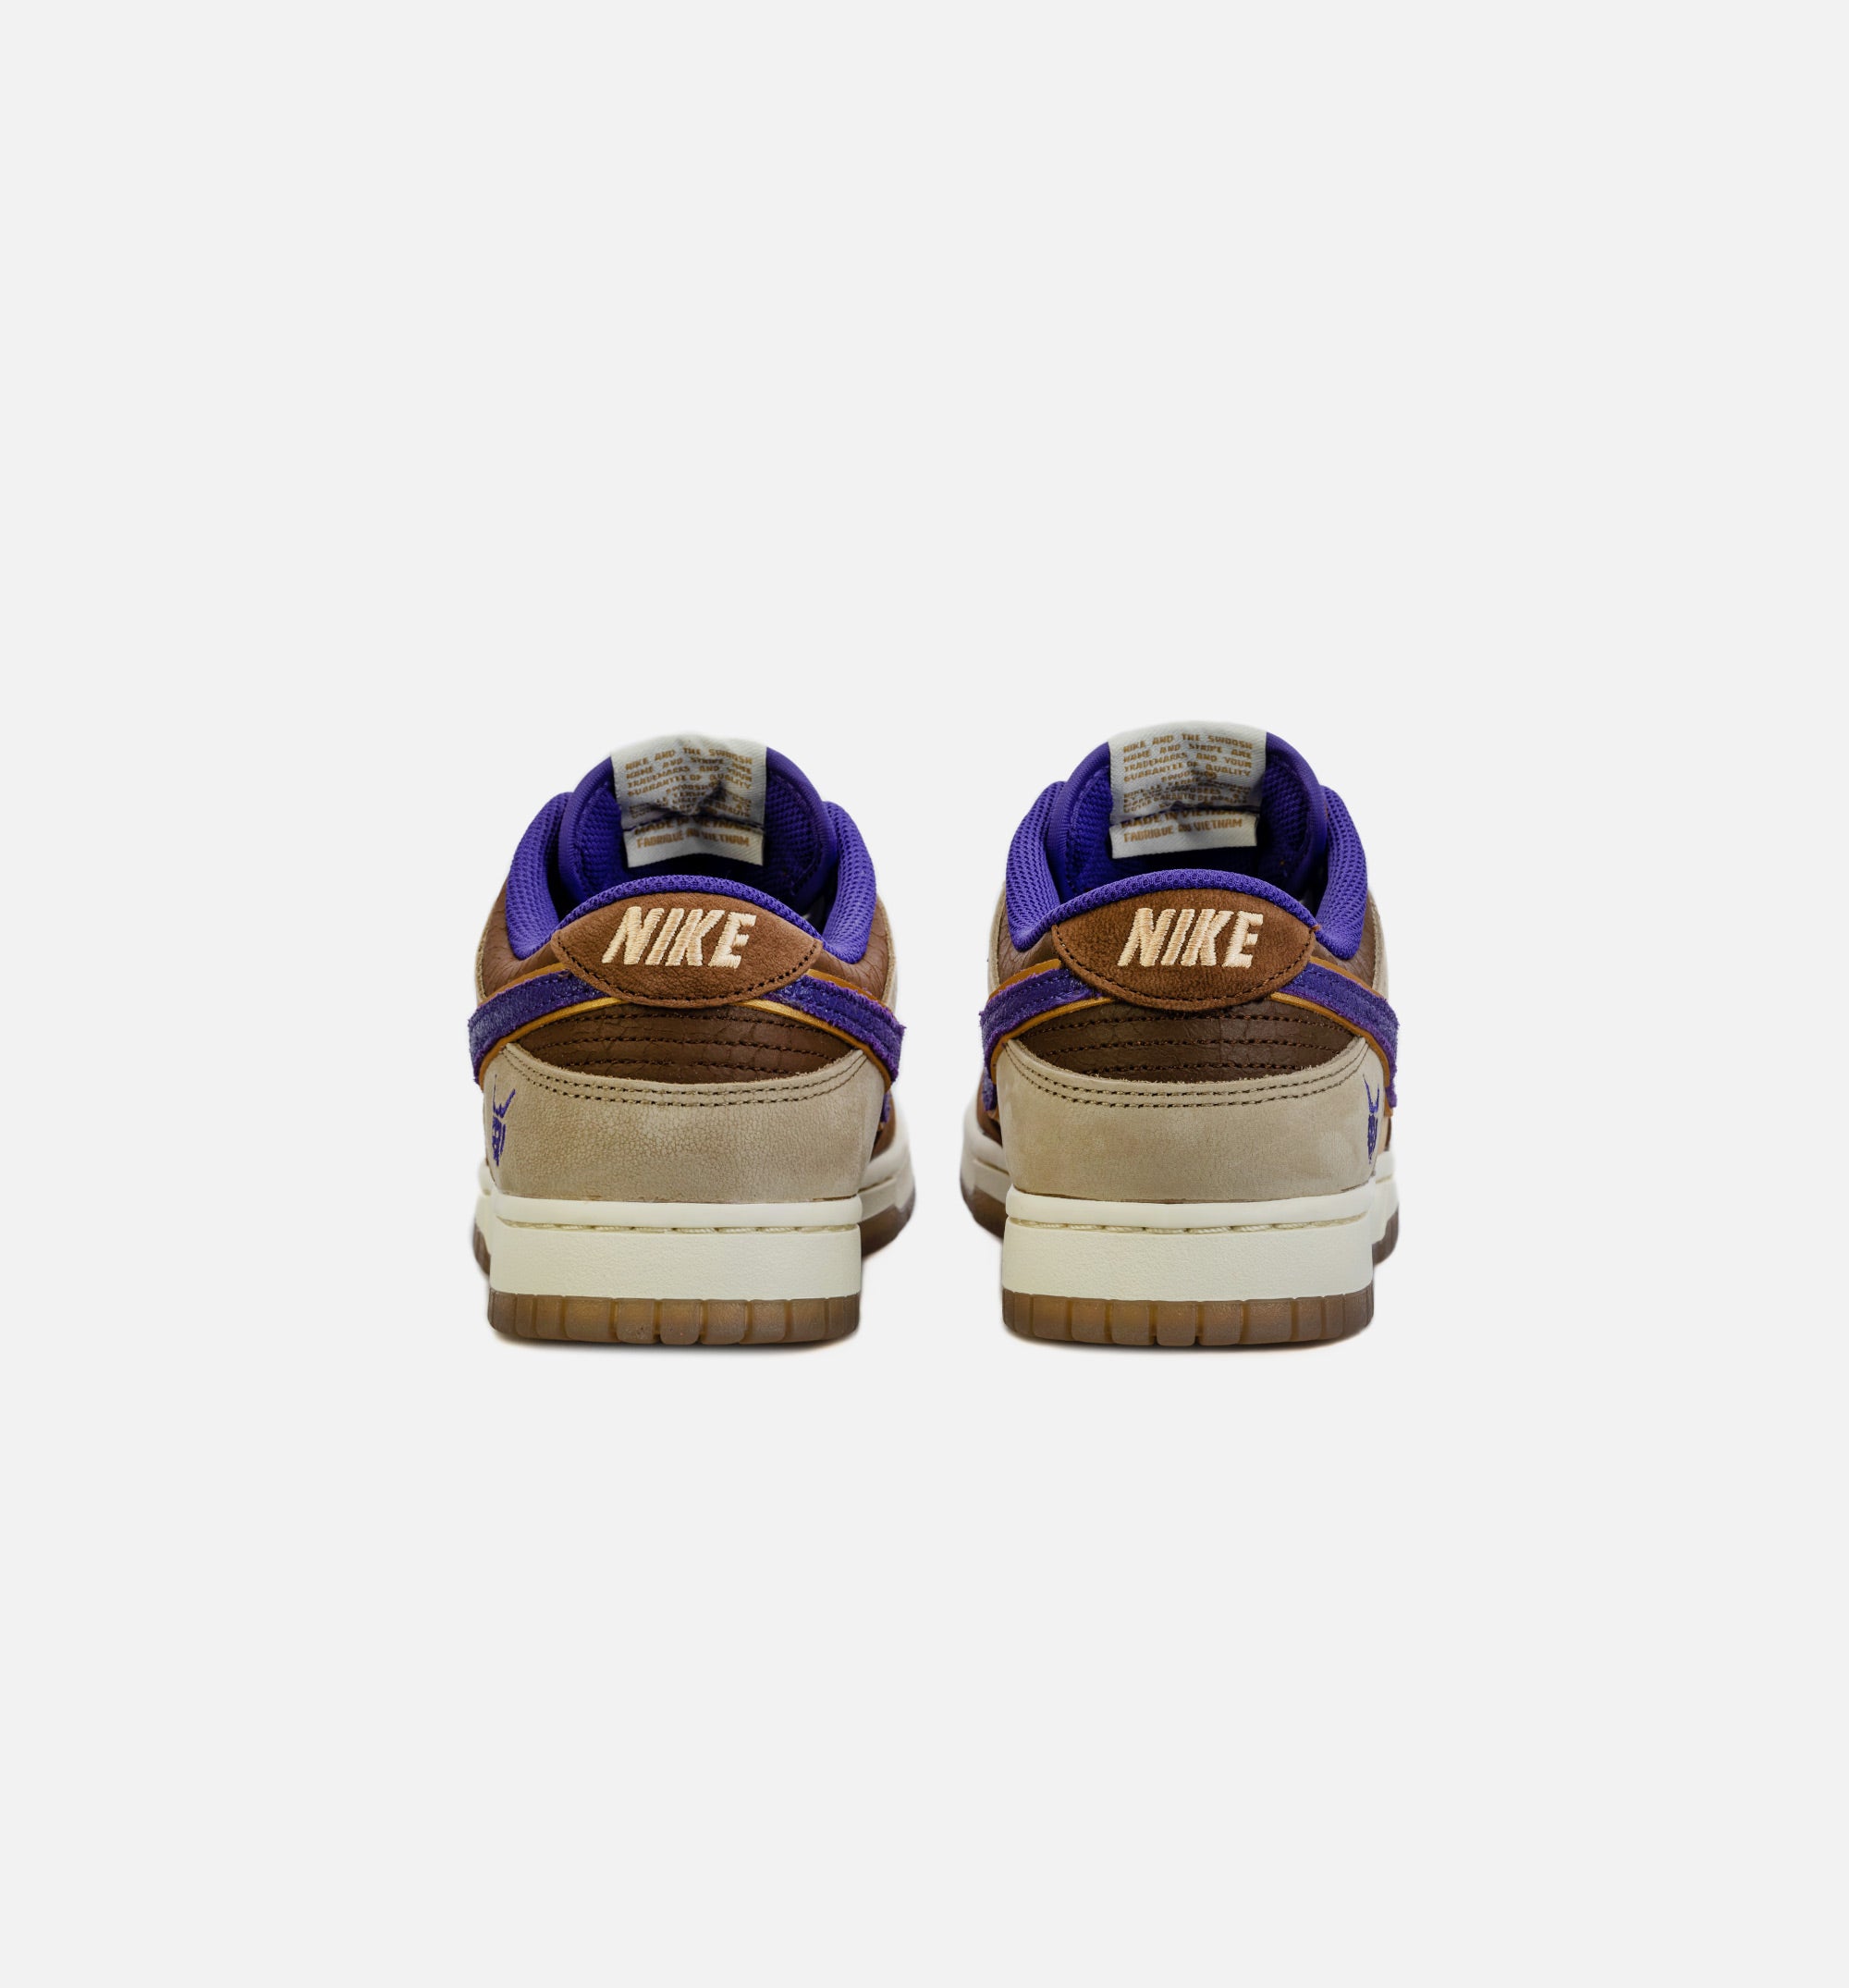 DQ5009-268 Nike Dunk Low “Setsubun” Tan/Brown-Purple 